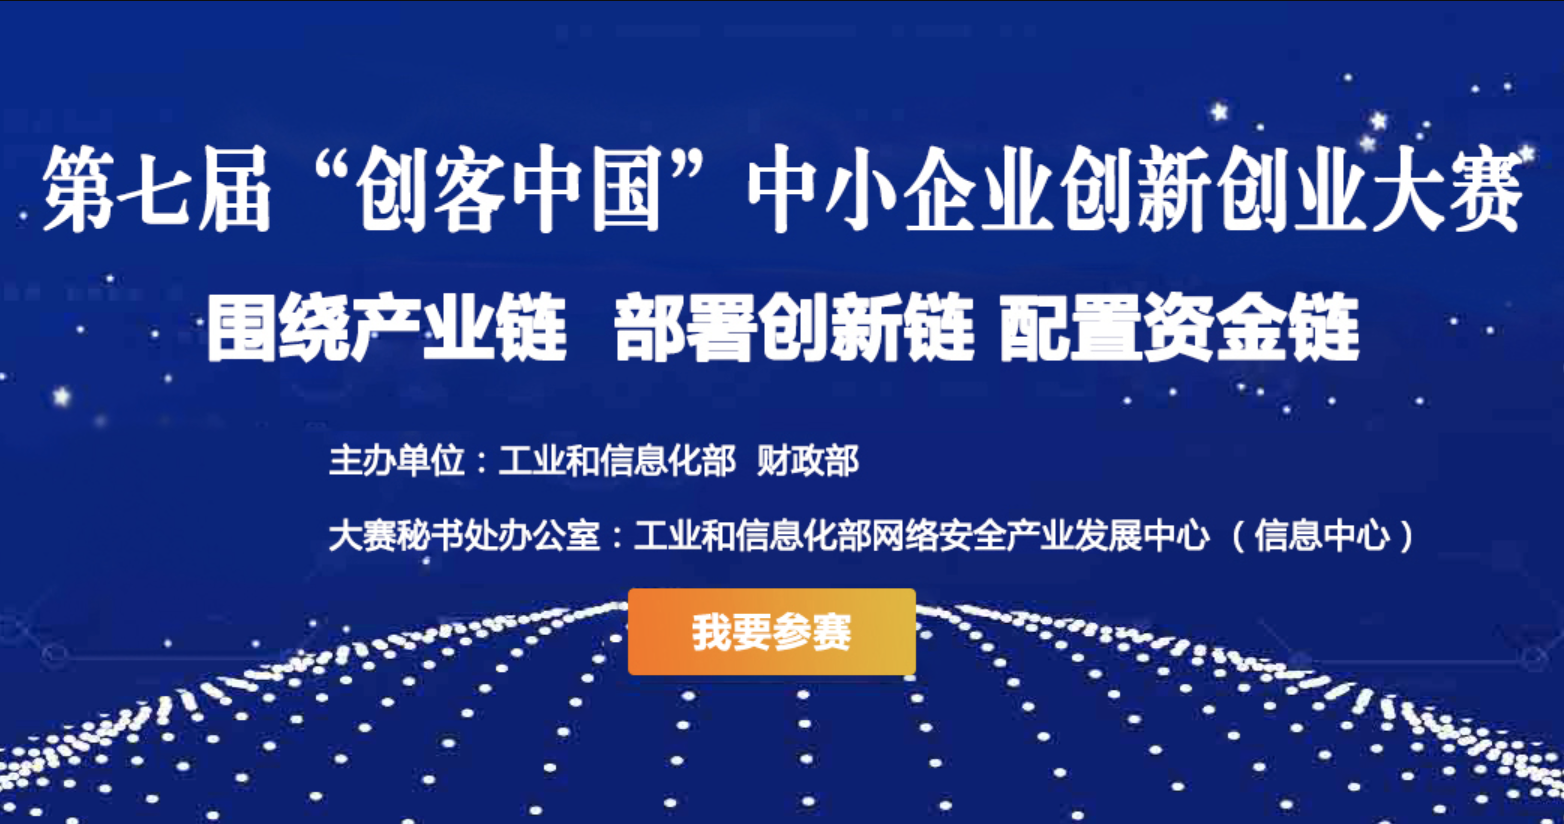 第七届“创客中国”中小企业创新创业大赛